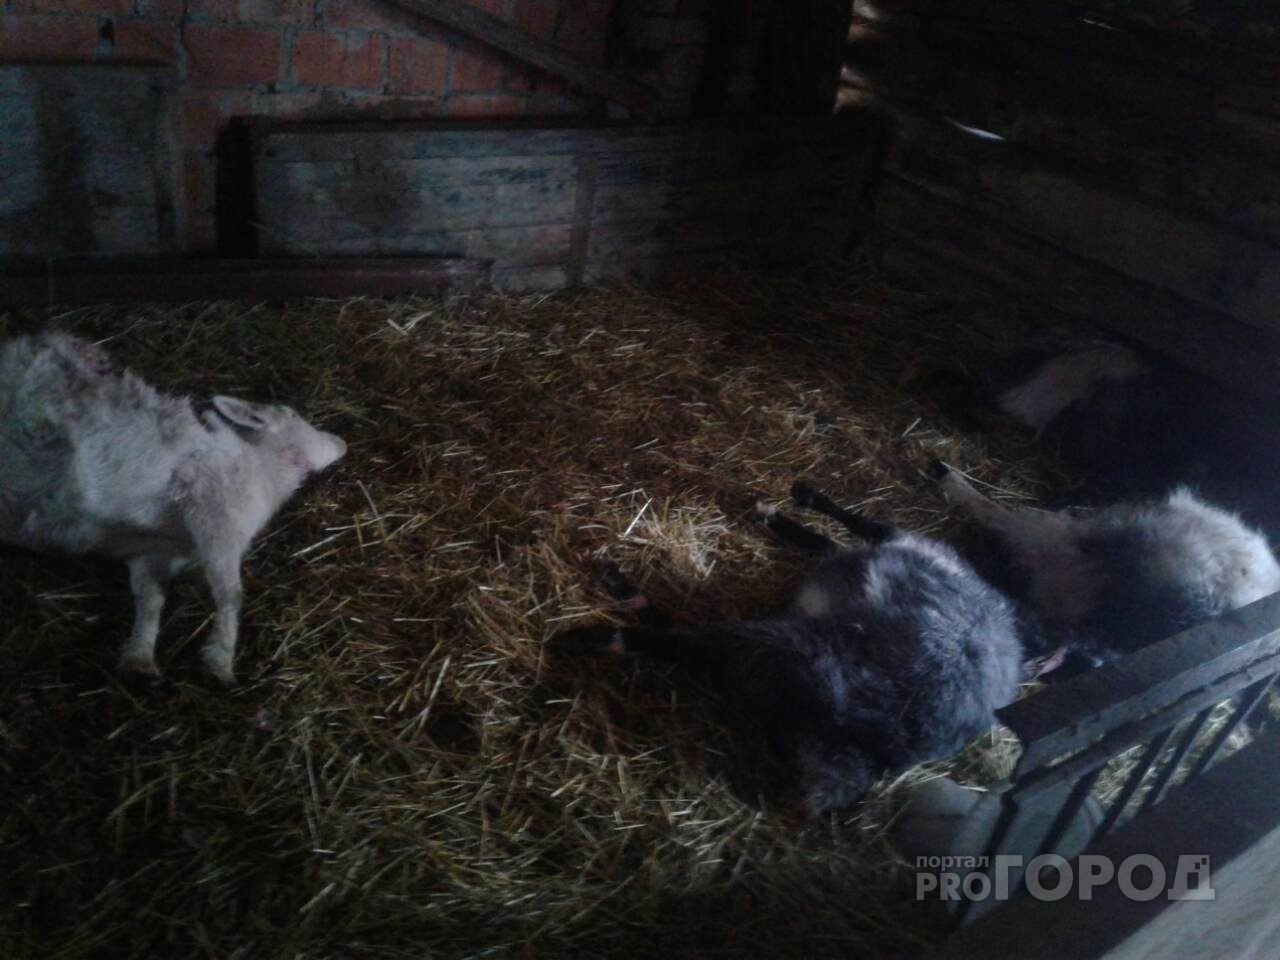 По сугробу волчиха взобралась. Хлев ночью. Домашний скот Чувашской Республики. Фото дохлые кролики в хлеву.